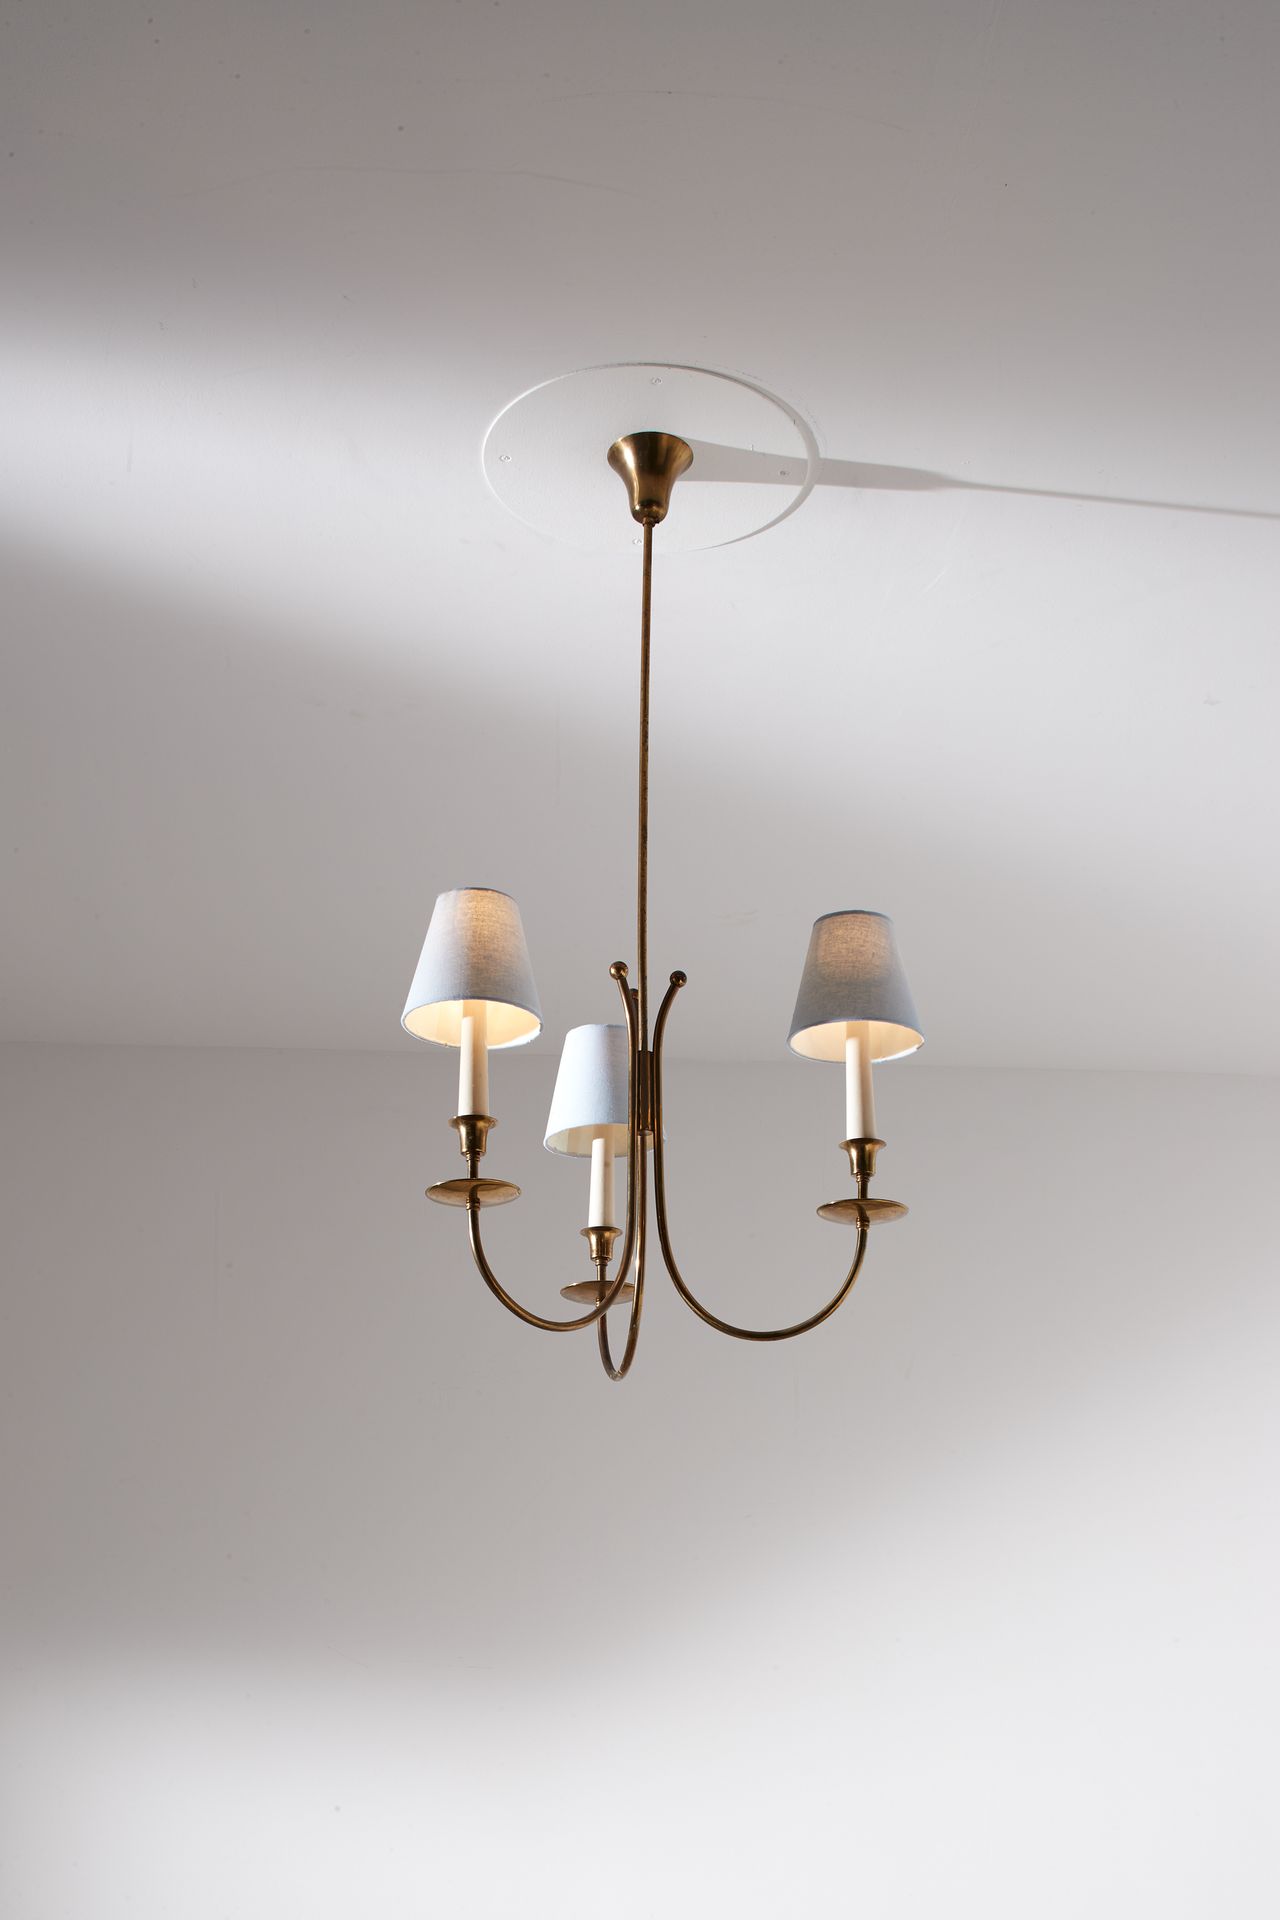 JEAN ROYERE (NEL GUSTO DI) 吊灯。黄铜，漆木，织物。意大利 1950年代。
100x40厘米
J.罗耶尔风格的吸顶灯



整体状况良&hellip;